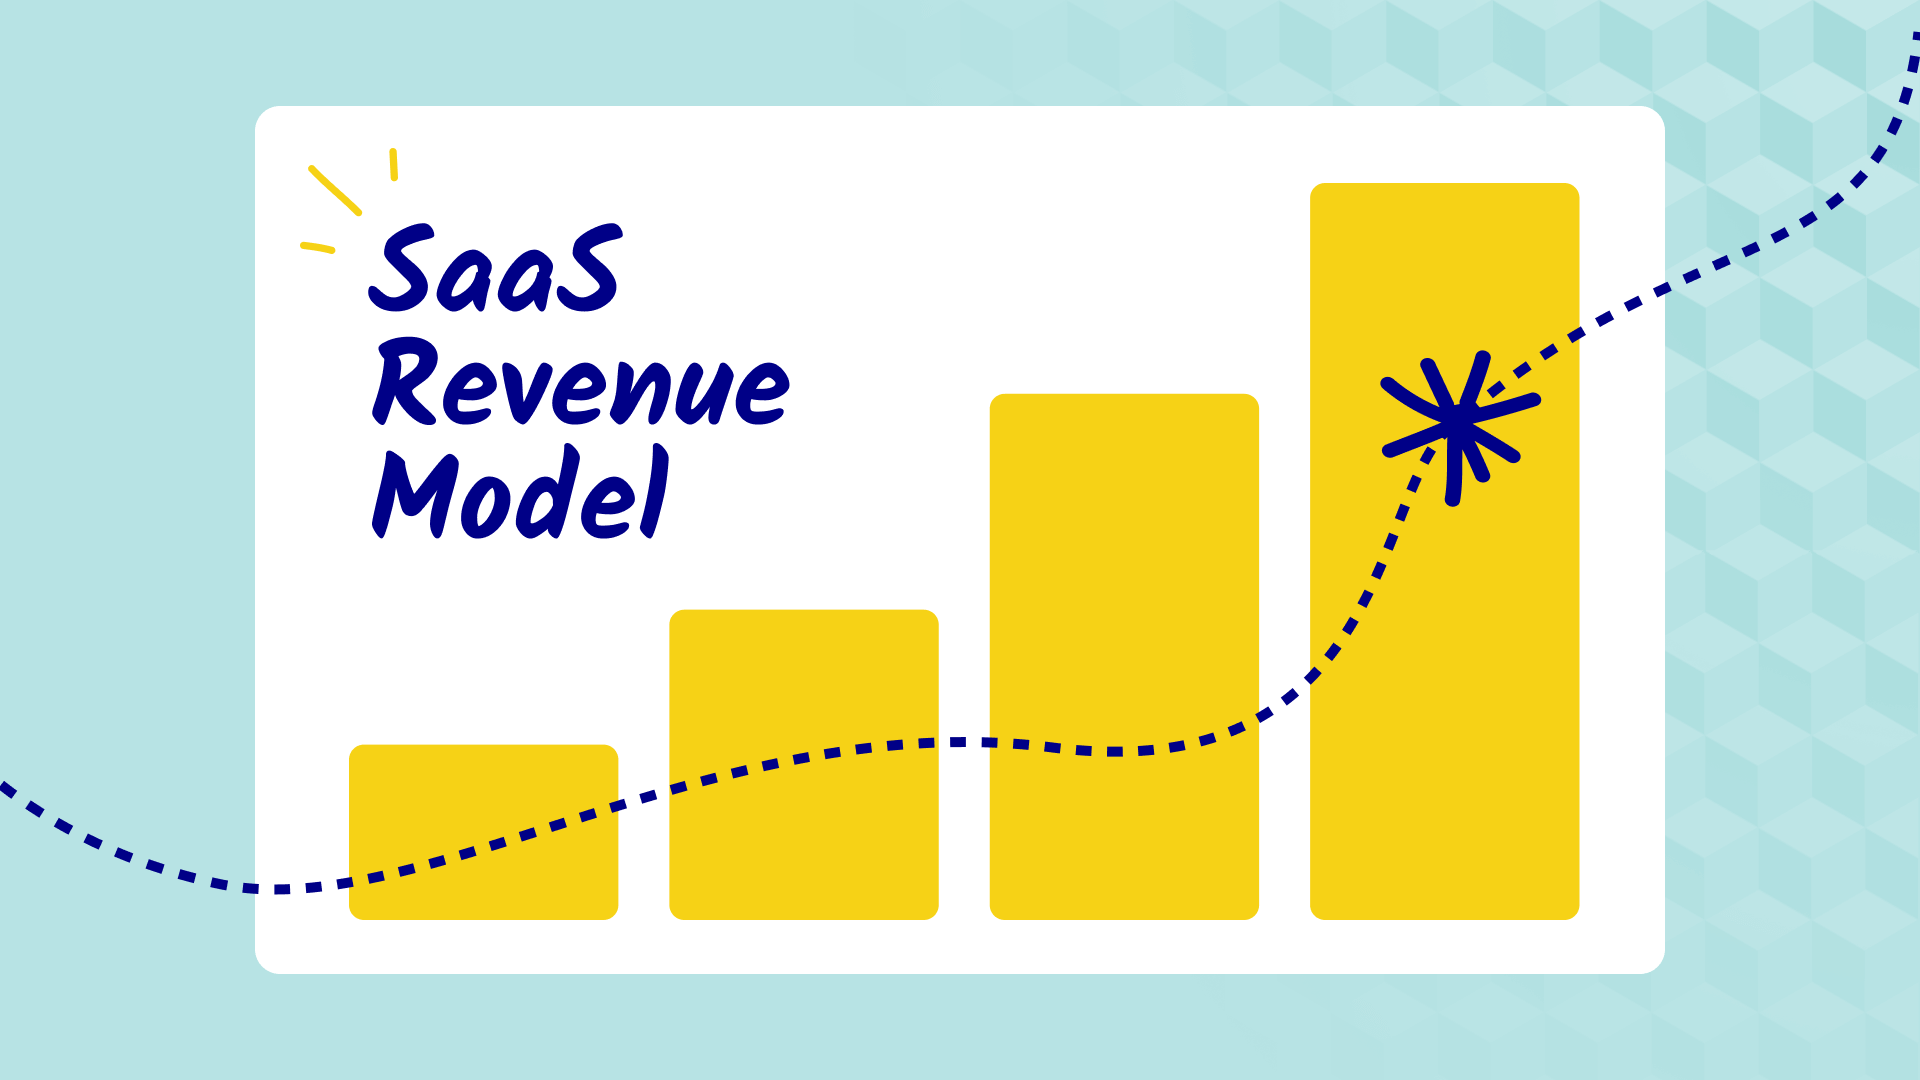 SaaS Revenue Model